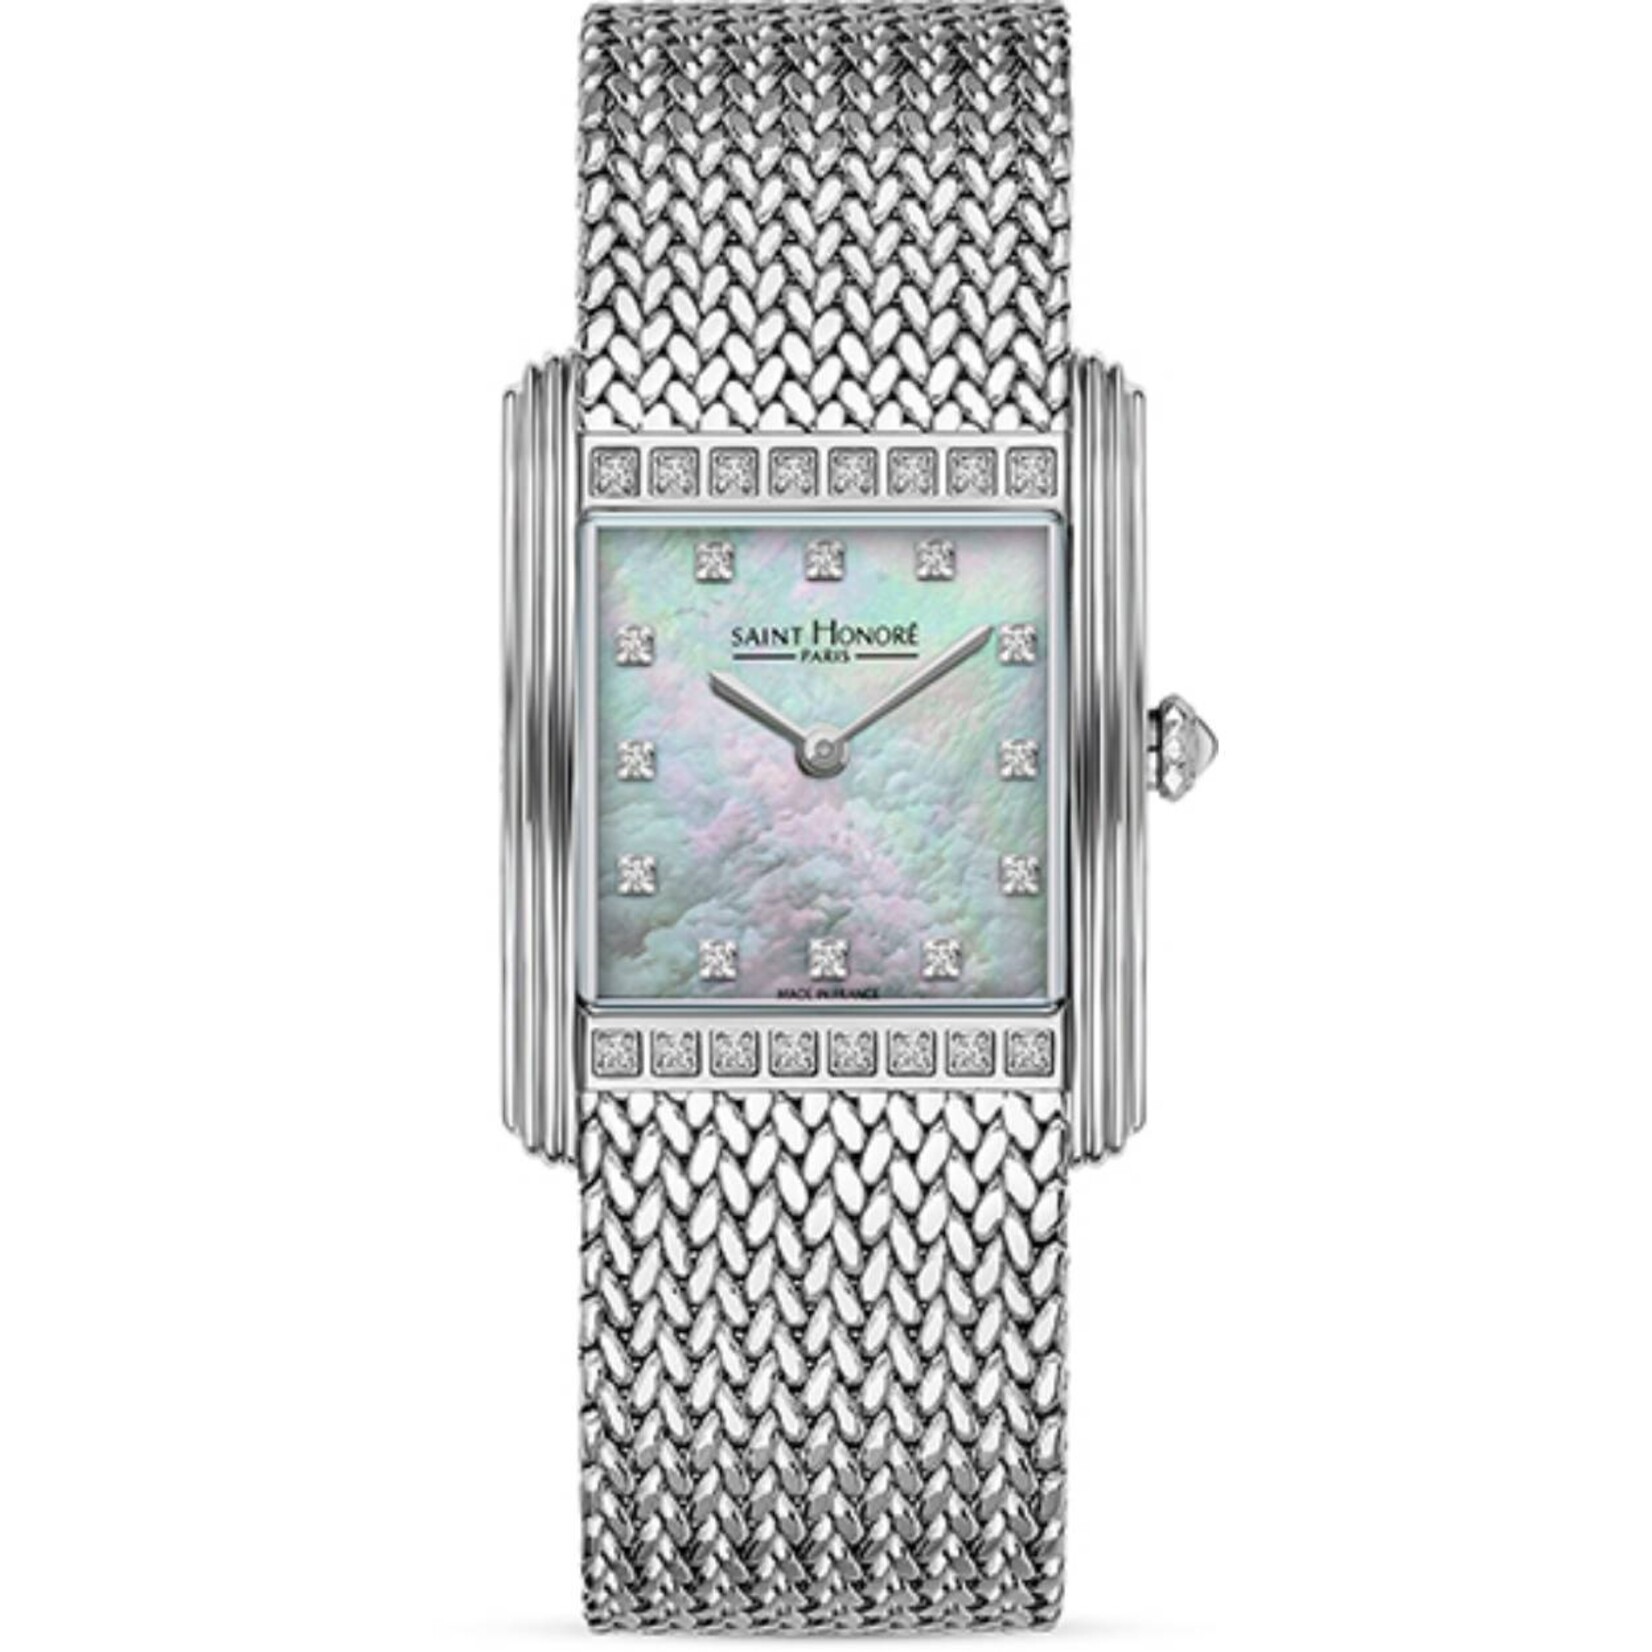 Saint Honoré Saint honoré palais royal horloge pr722155 1ybdn diamond 0.27ct